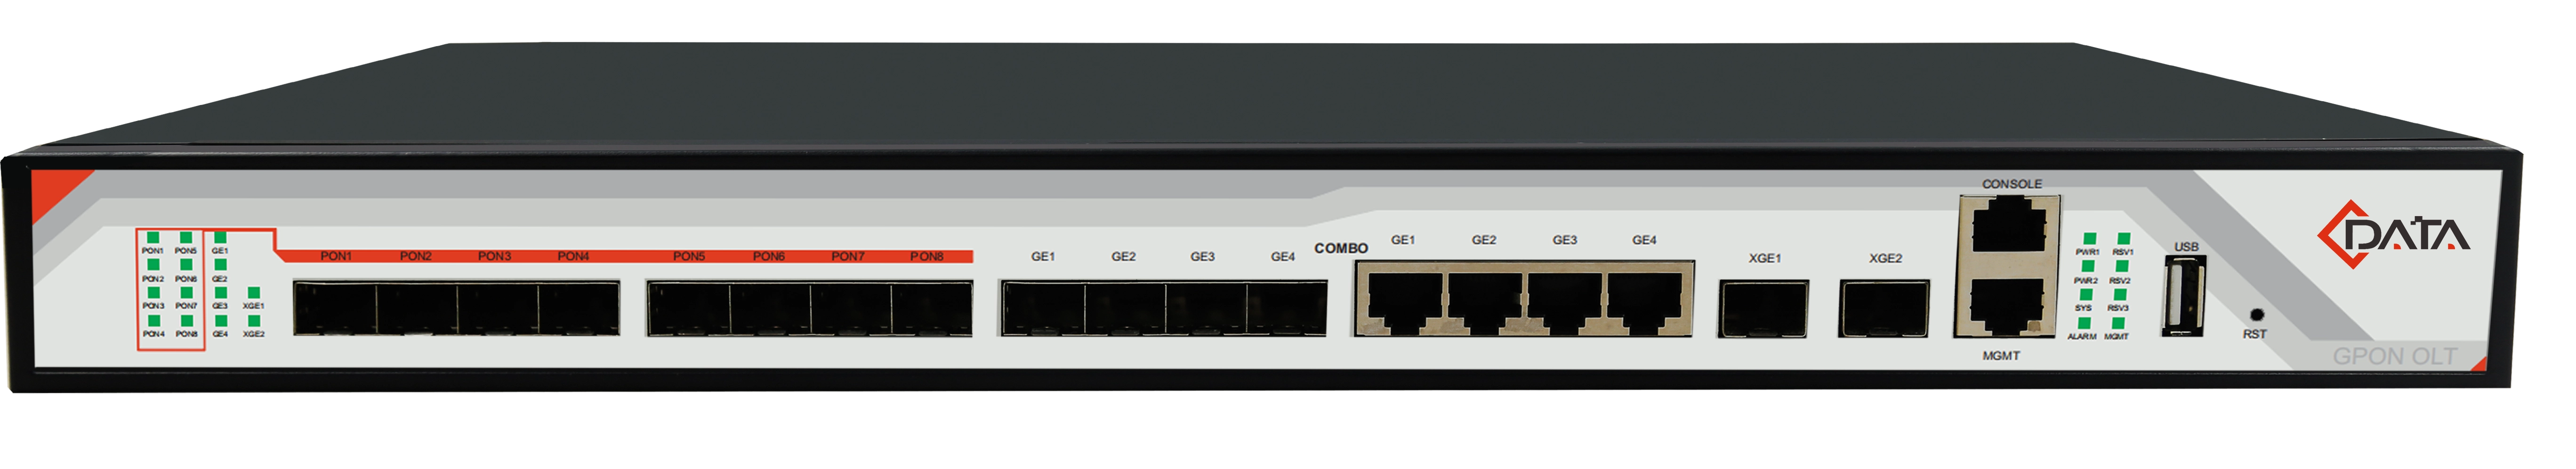 Оптический линейный терминал OLT C-Data GPON FD1608S-B1 (8 портовый ОЛТ)с 8 портами GPON (SFP), 4 GE комбо-порта, 2 SFP+ порта, 2 БП АC #1